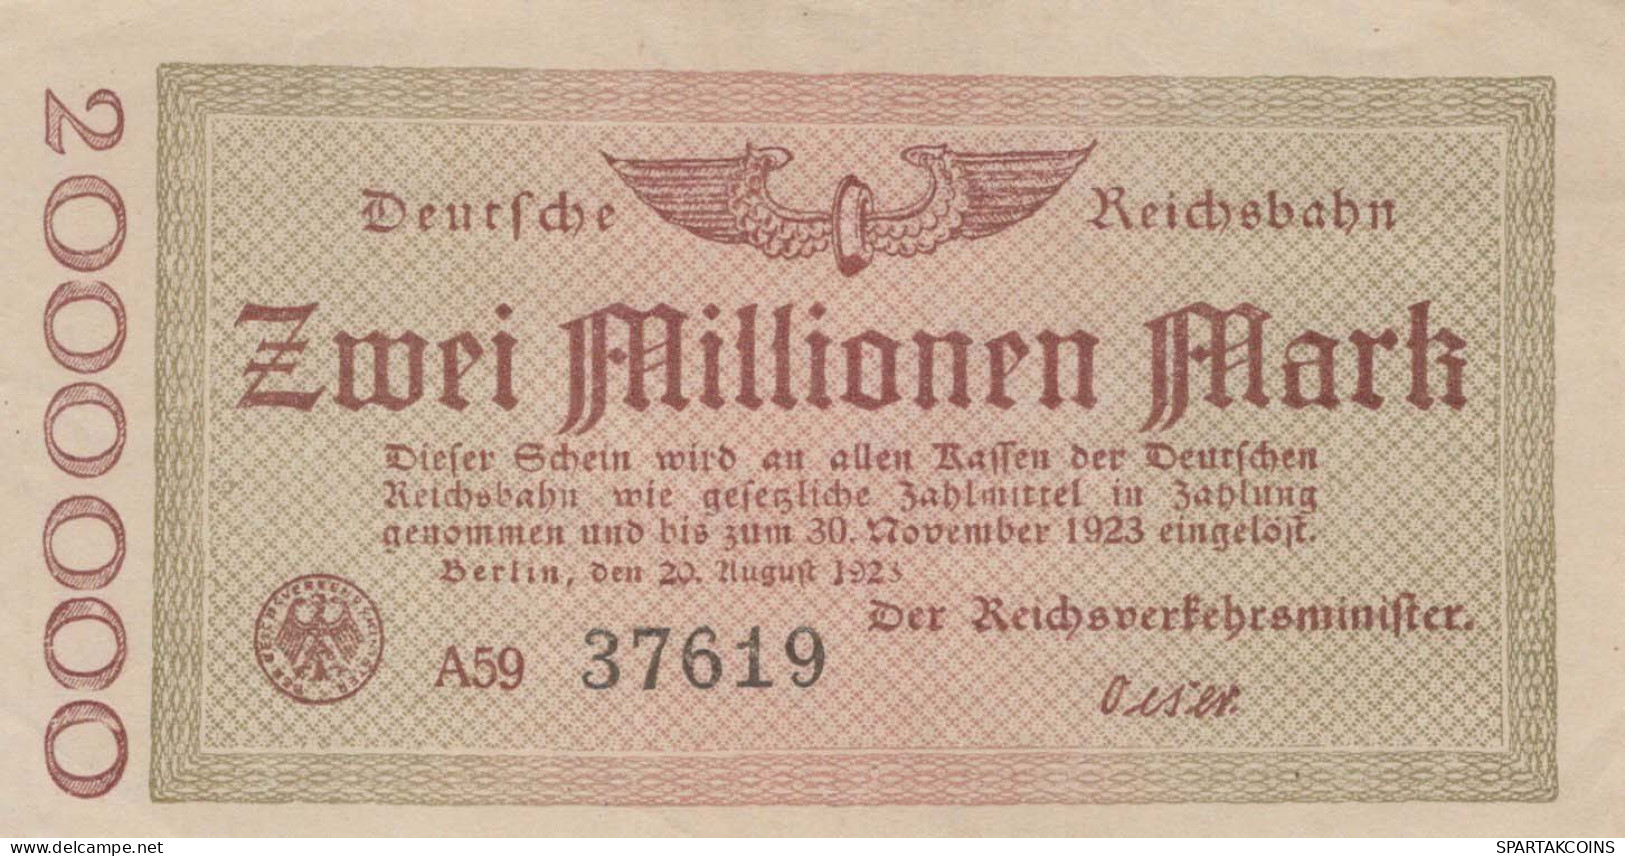 1 MILLION MARK 1923 Stadt BERLIN UNC DEUTSCHLAND Papiergeld Banknote #PK769 - [11] Local Banknote Issues